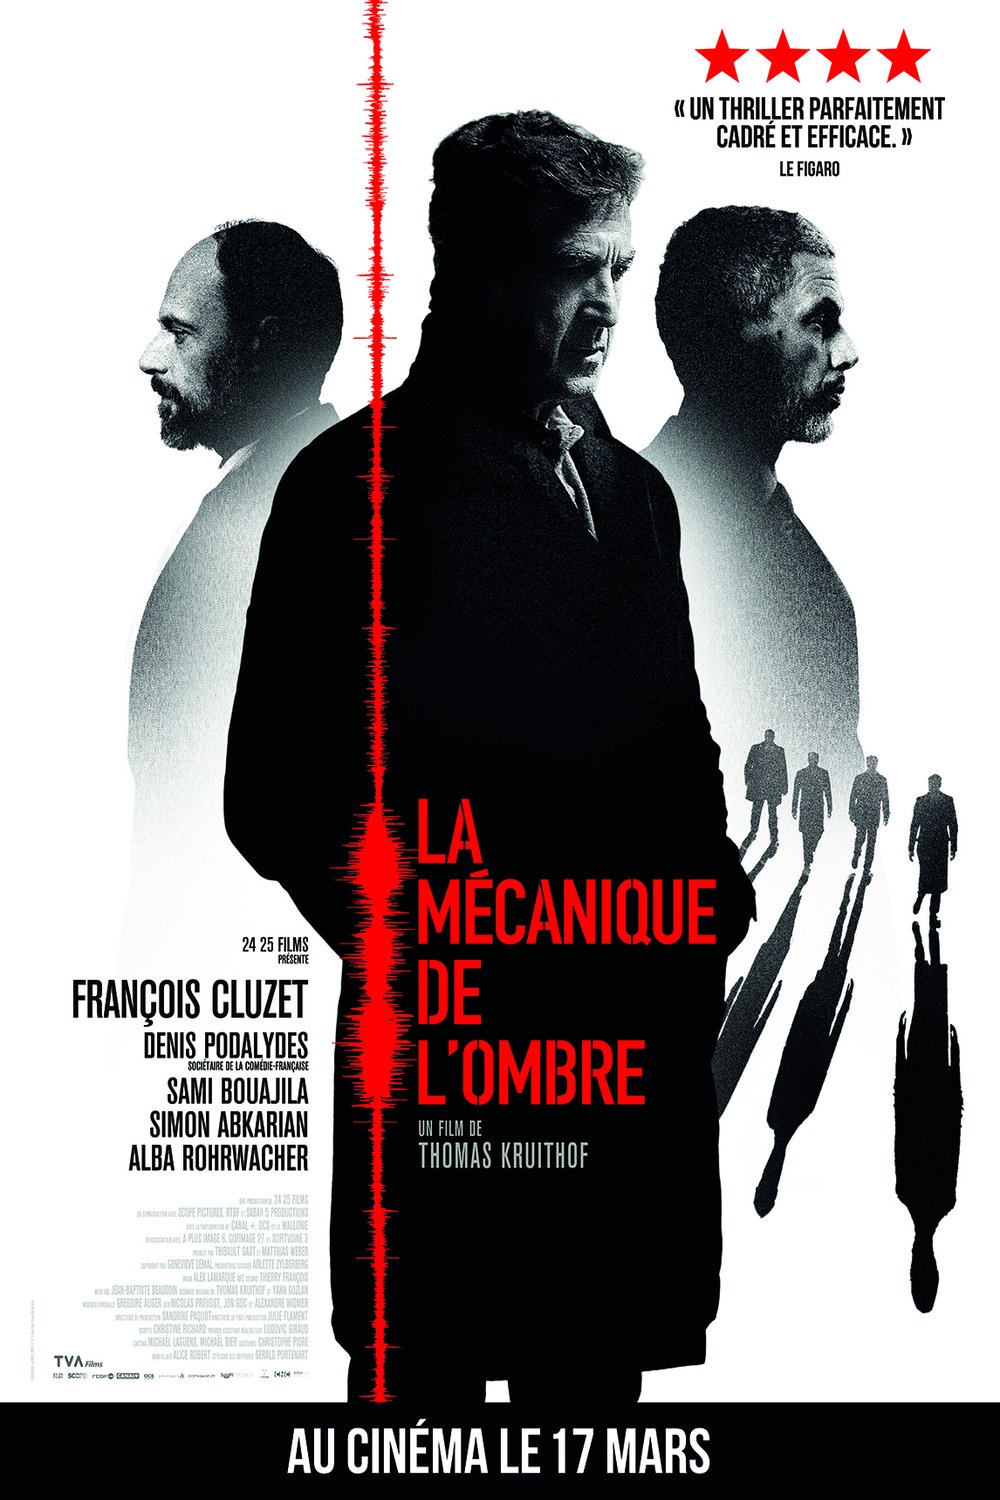 Poster of the movie La Mécanique de l'ombre